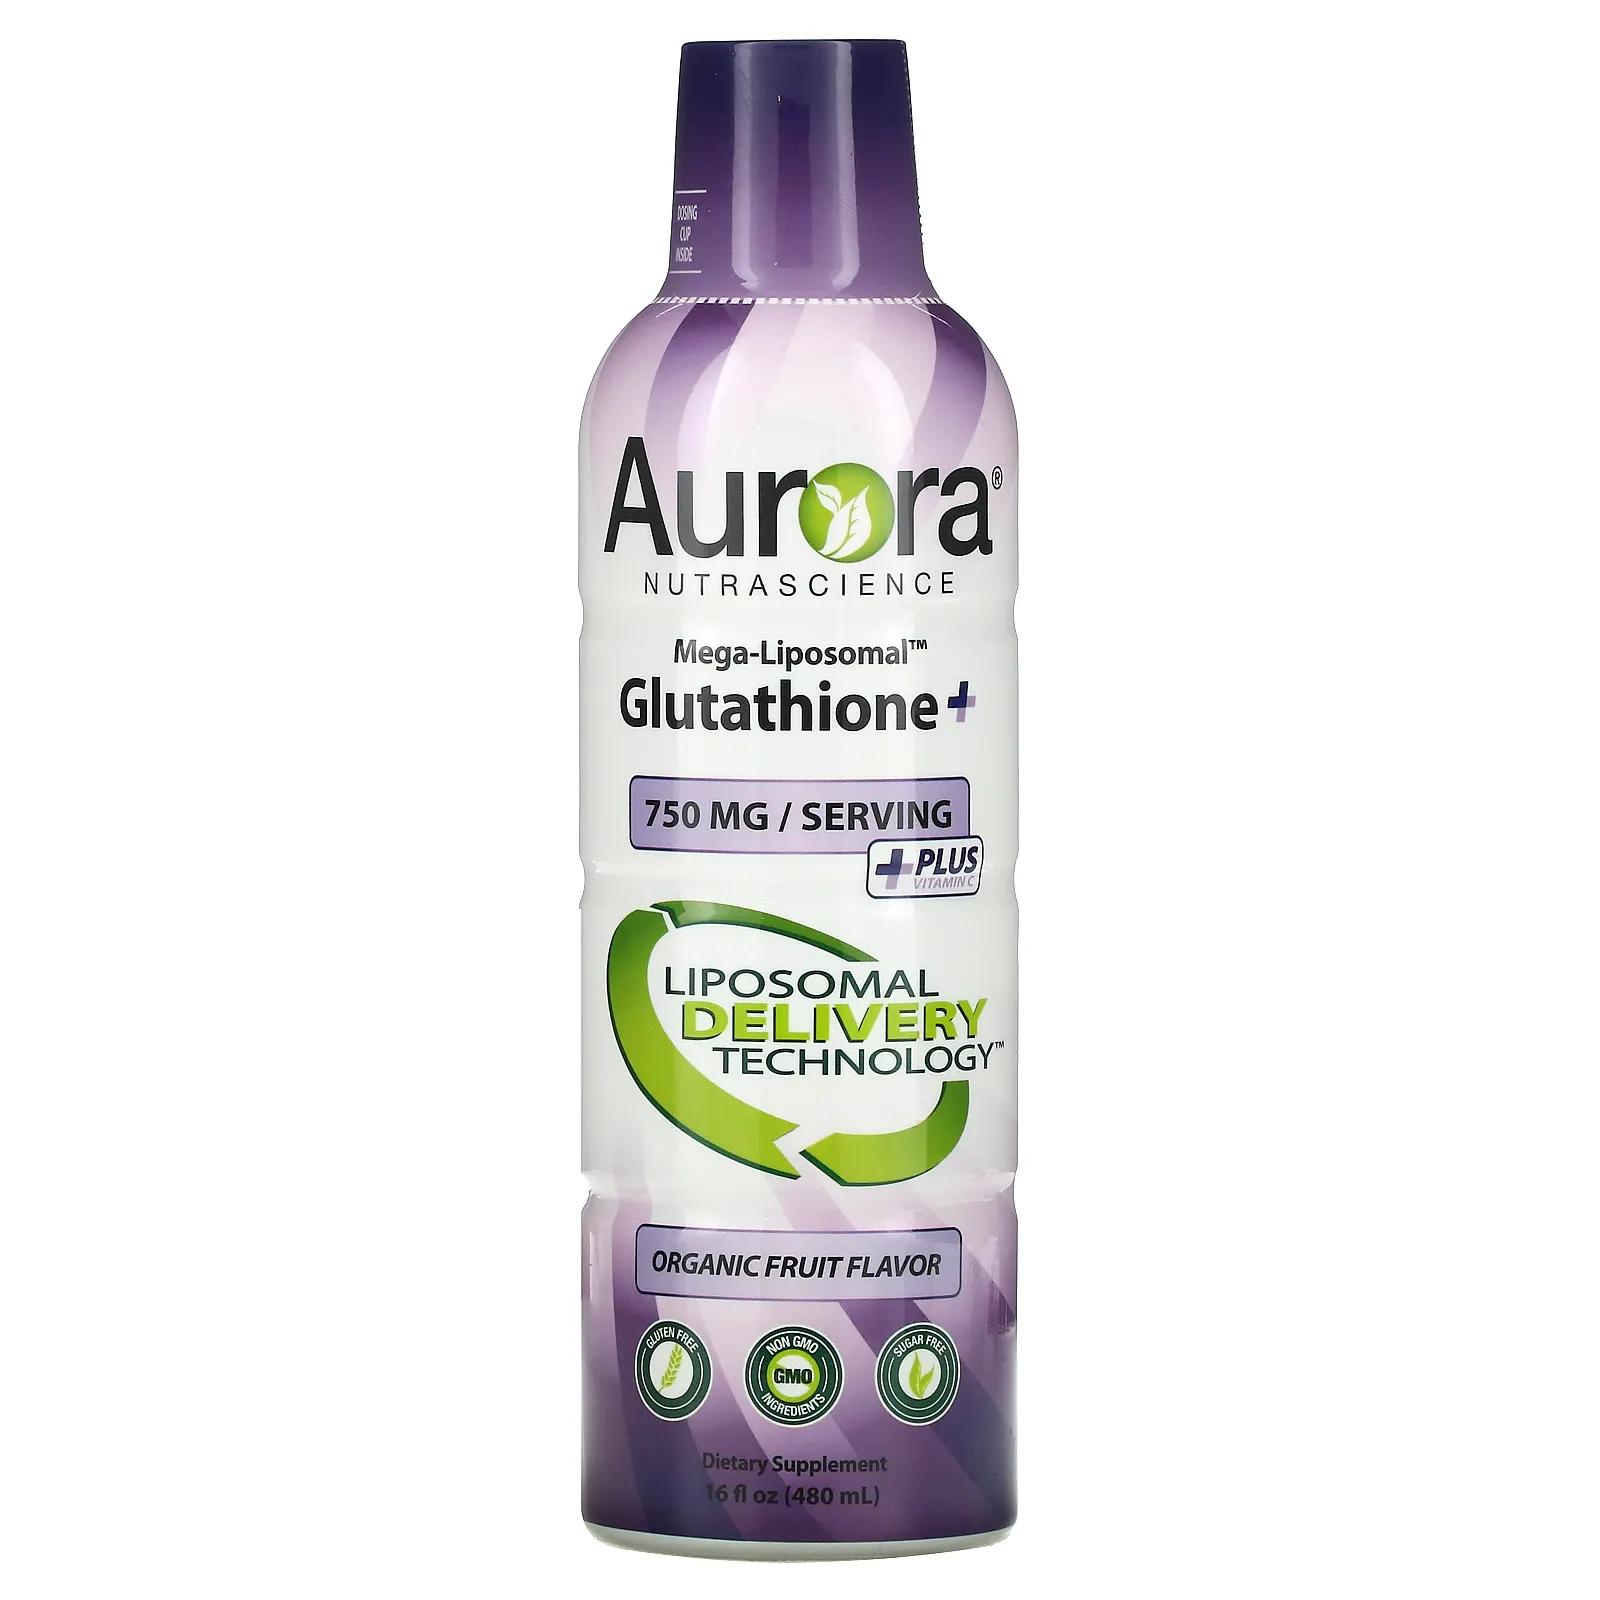 Aurora Nutrascience мегалипосомальный глутатион+ с витамином C со вкусом органических фруктов 750 мг 480 мл (16 жидк. унций) витамин c aurora nutrascience фруктовый вкус 3000 мг 480 мл